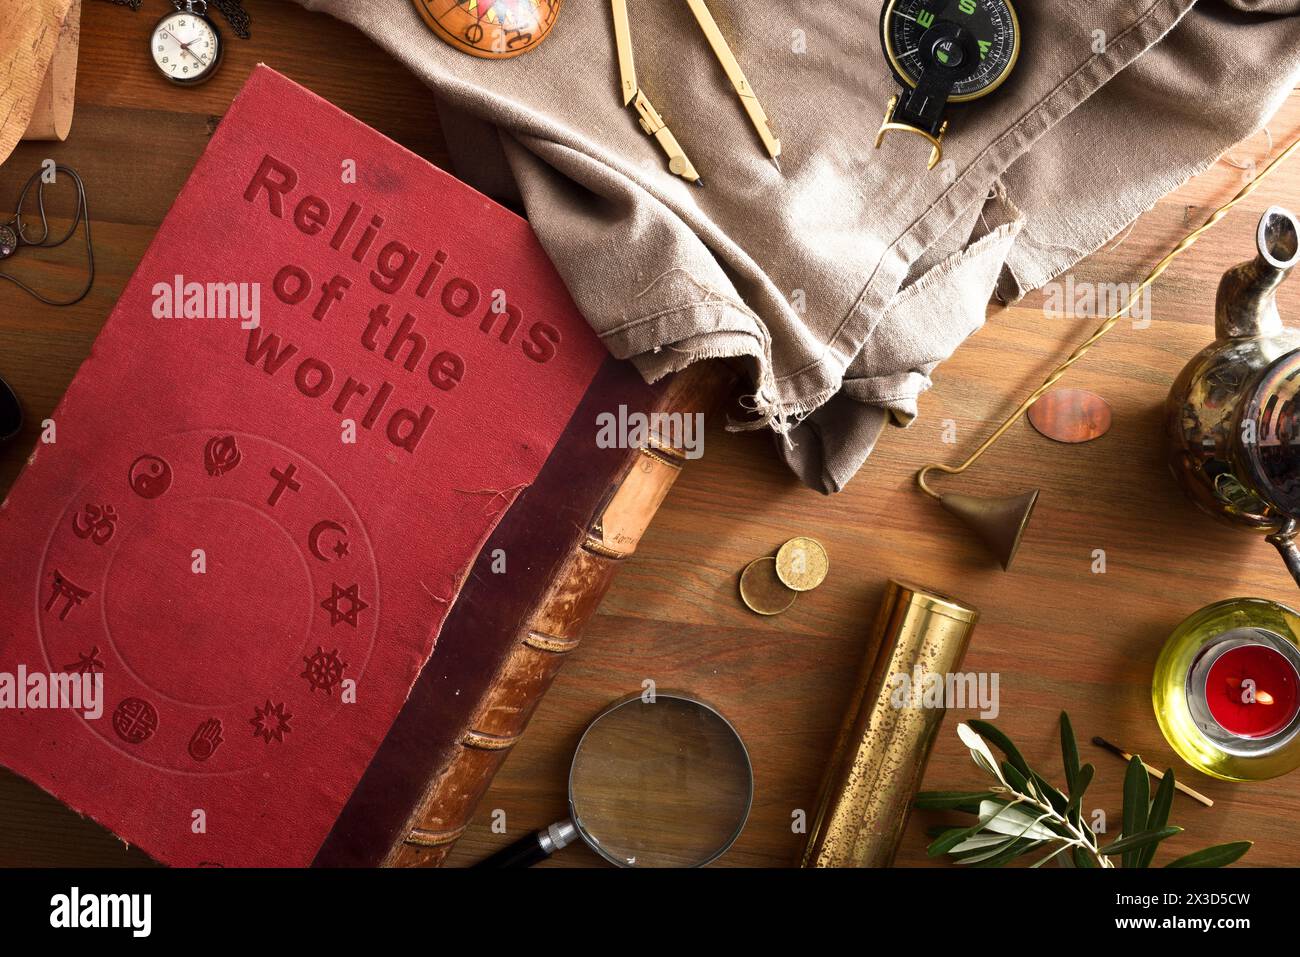 Allgemeine Ansicht des alten und verschlechterten Buches der Religionen der Welt mit eingravierten Buchstaben und religiösen Symbolen verschiedener Religionen auf dem Umschlag Stockfoto